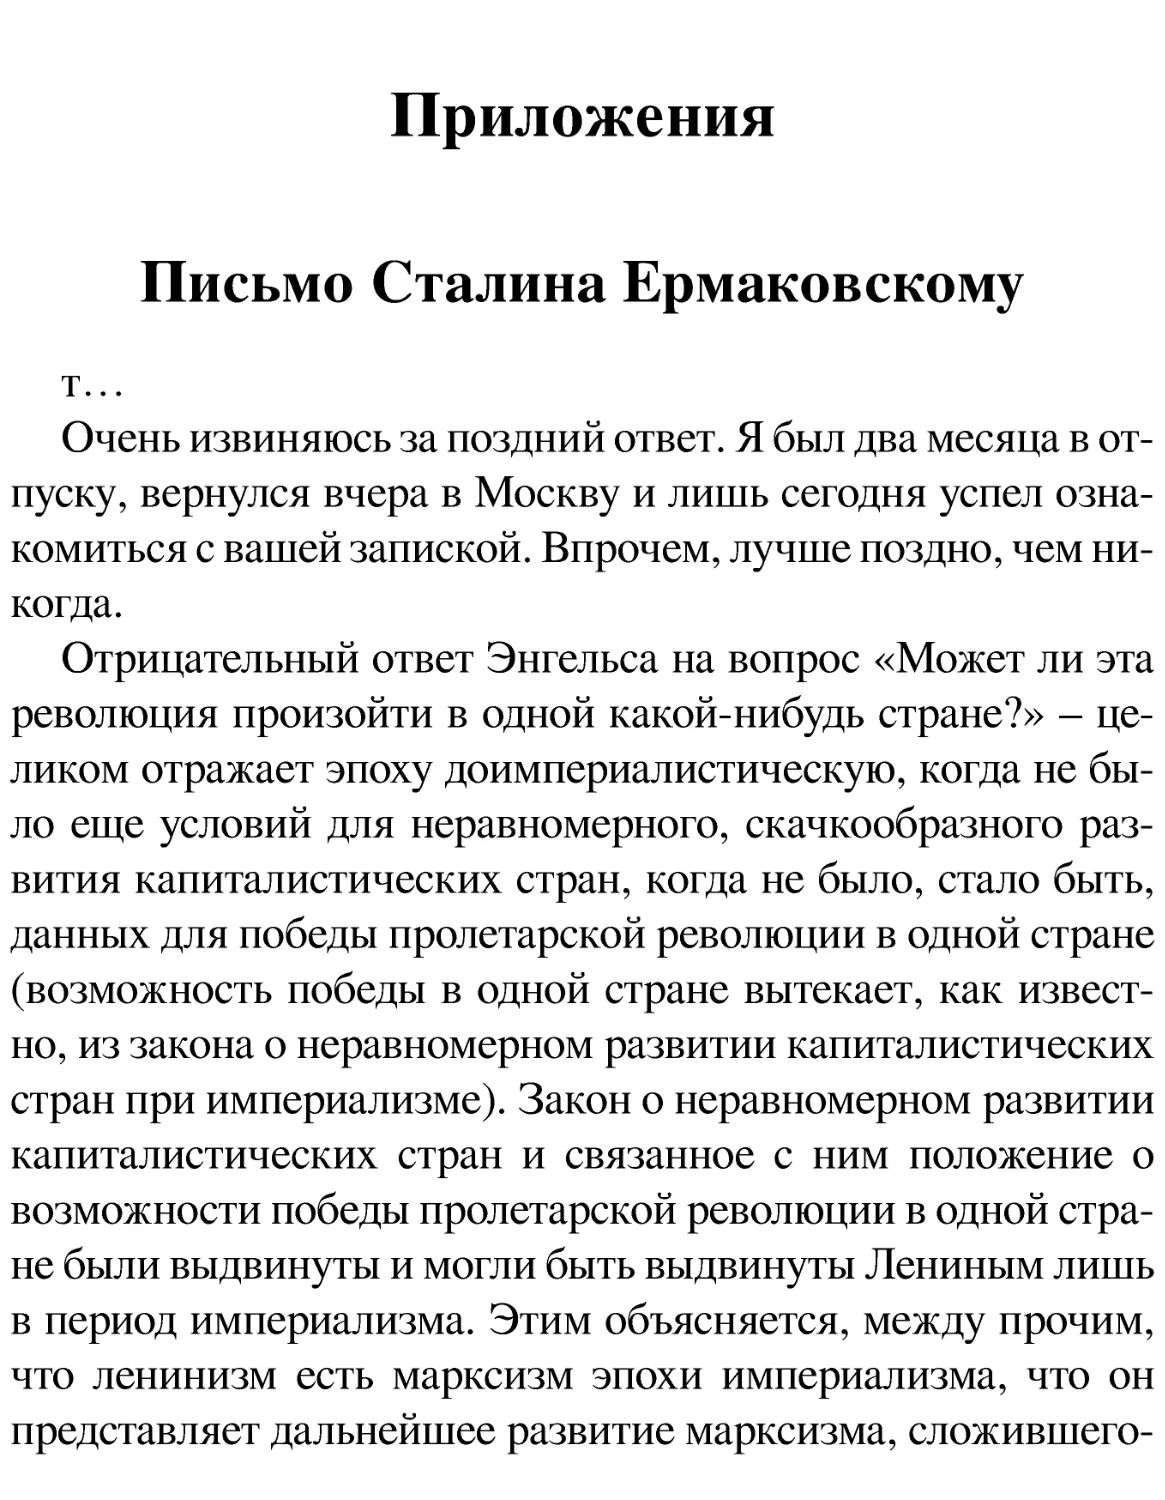 Приложения
Письмо Сталина Ермаковскому